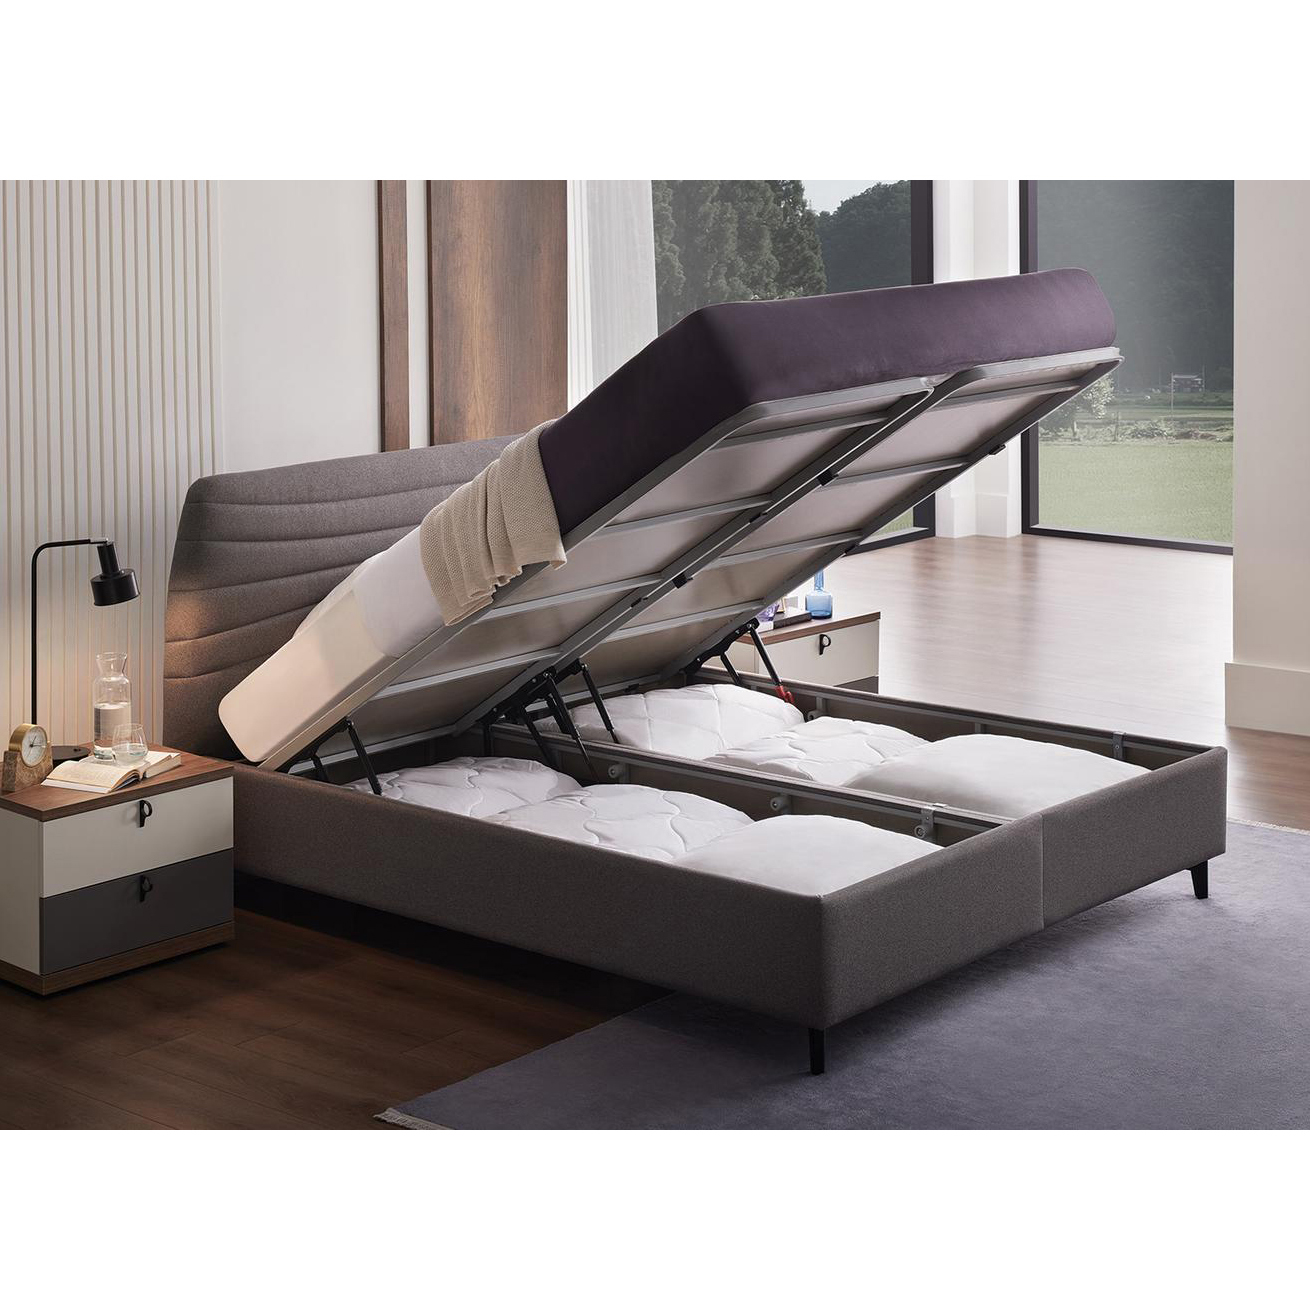 Кровать Enza Home Cordell, двуспальная, с подъемным механизмом, 160х200 см